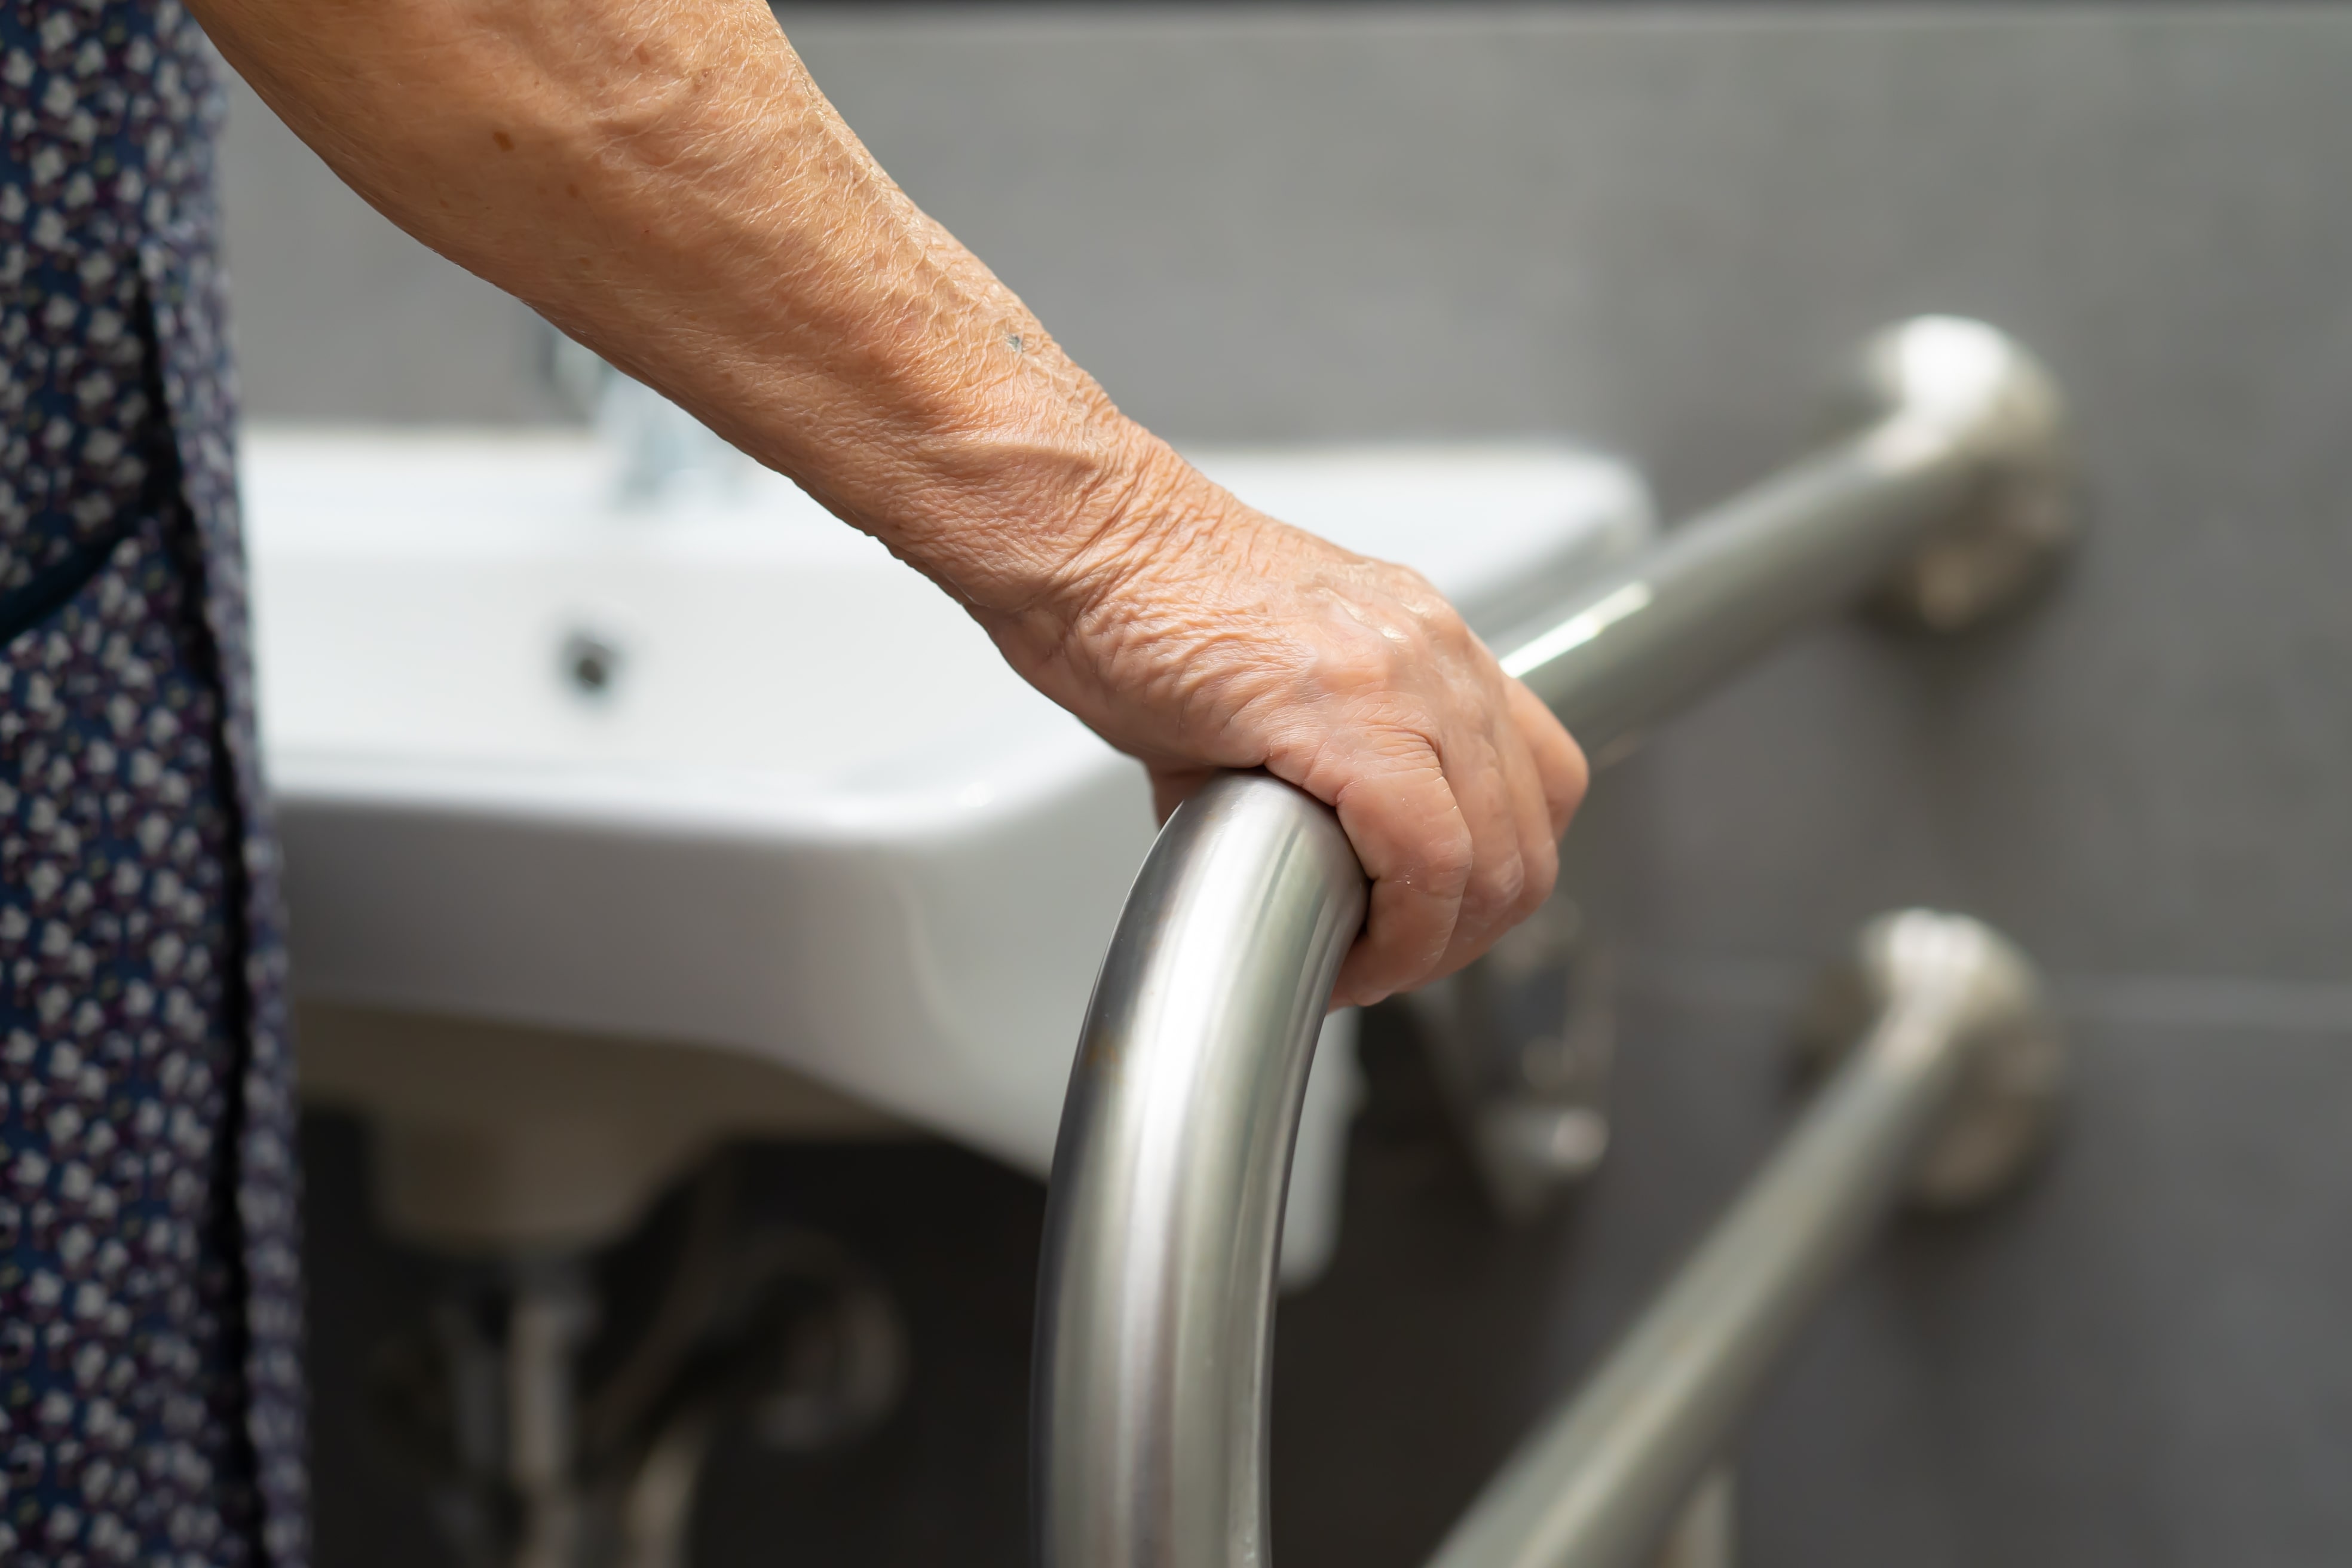 An older adult using a bathroom grab bar